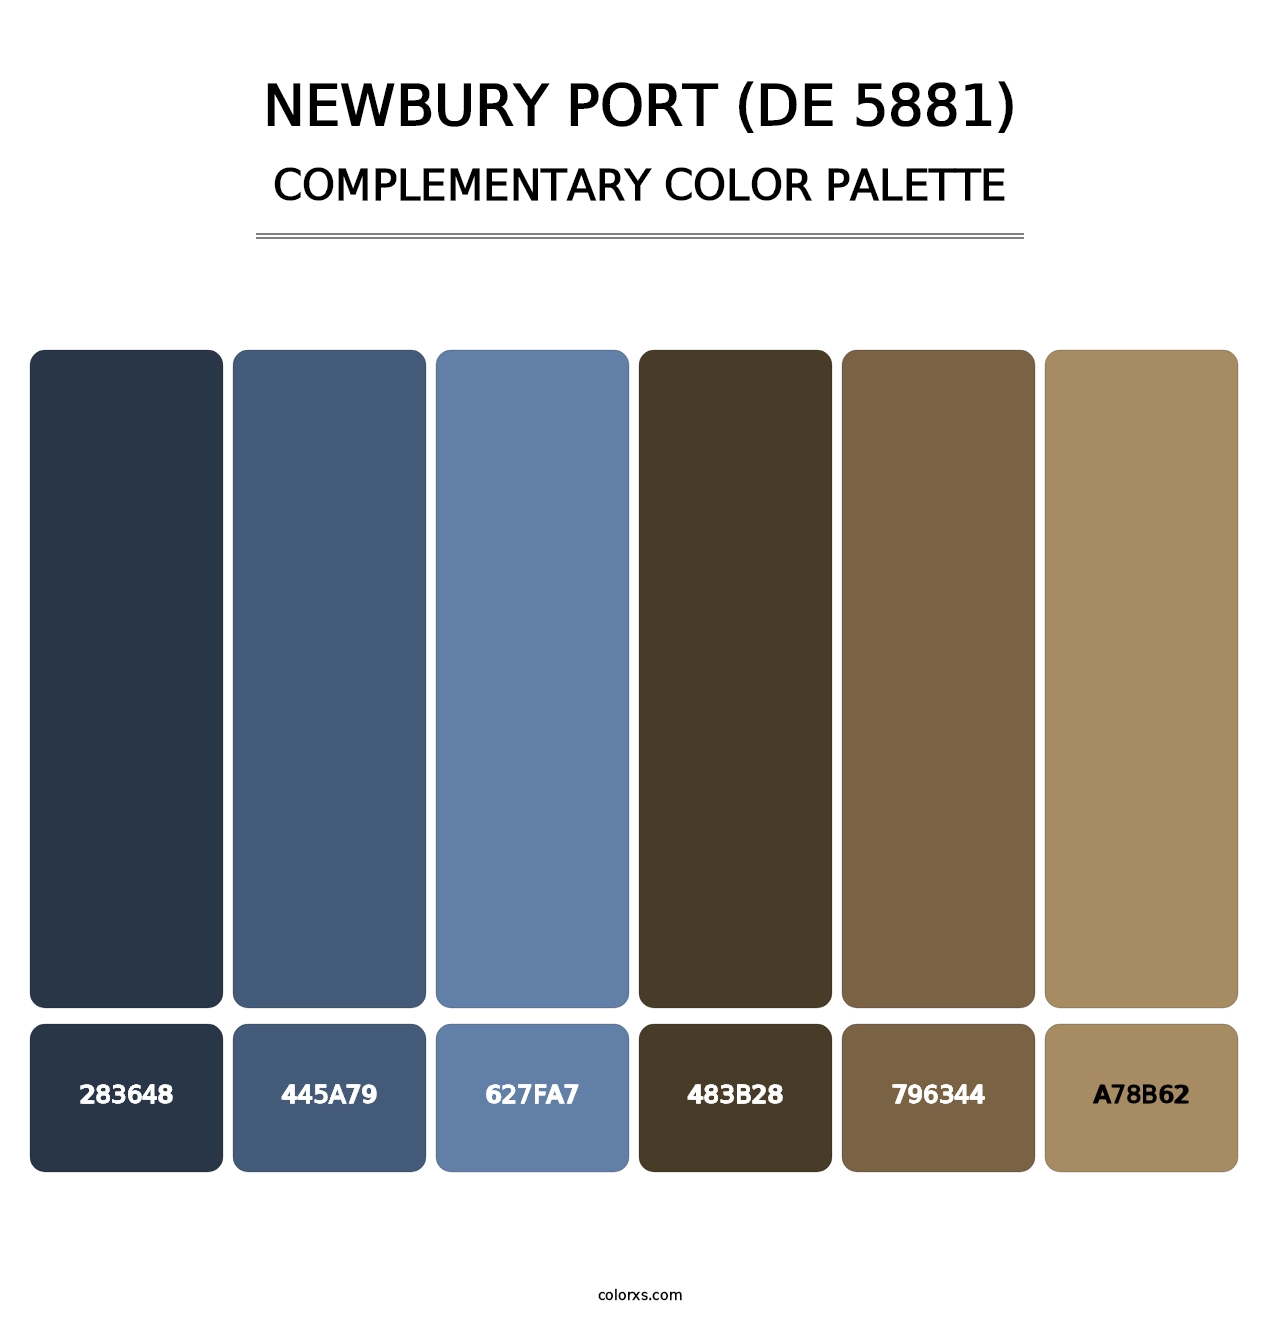 Newbury Port (DE 5881) - Complementary Color Palette